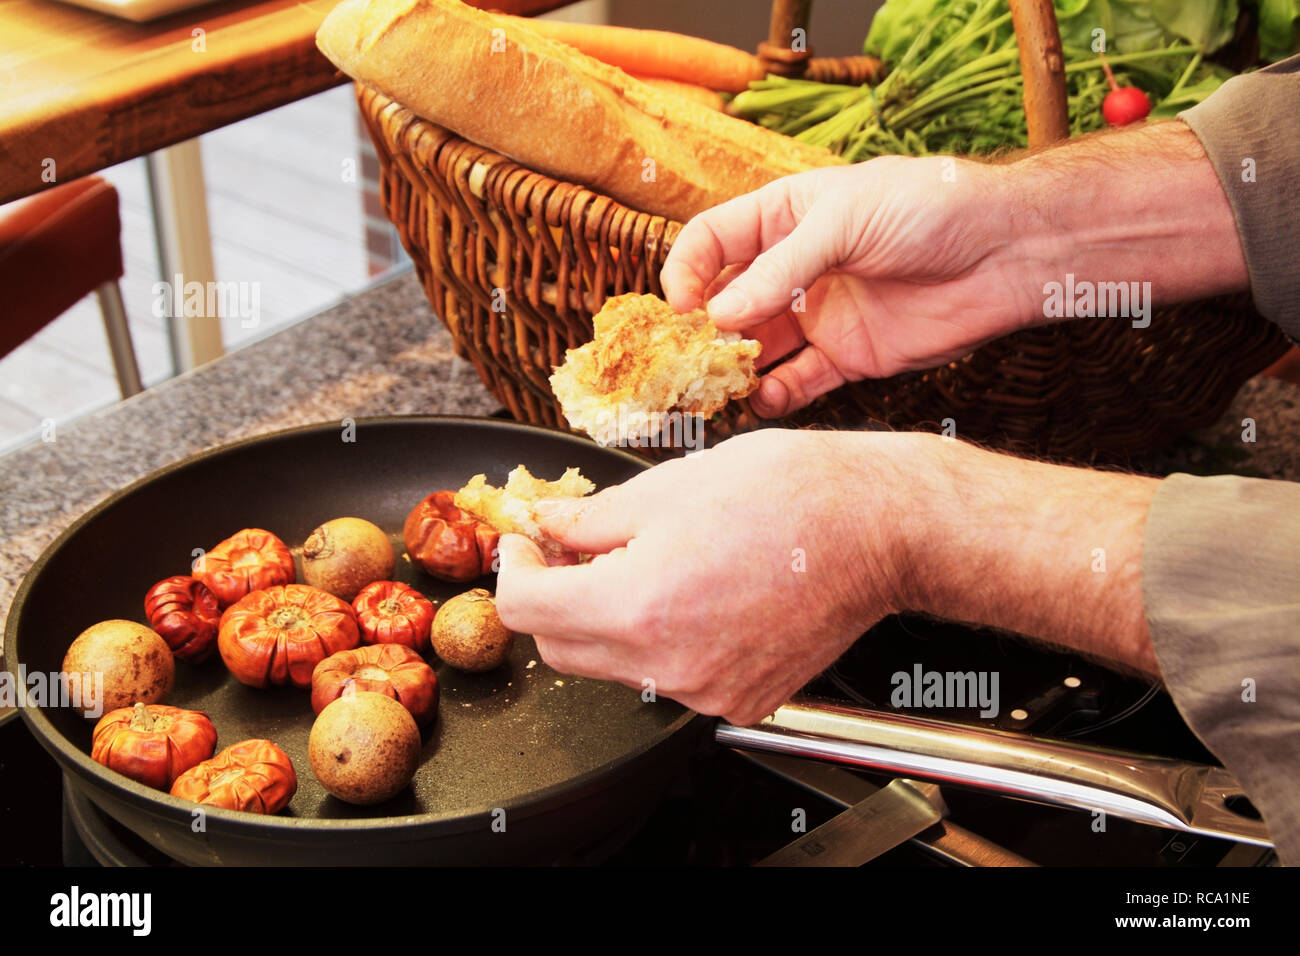 Nahaufnahme von Händen beim Kochen | Closeup of hands cooking Stock Photo